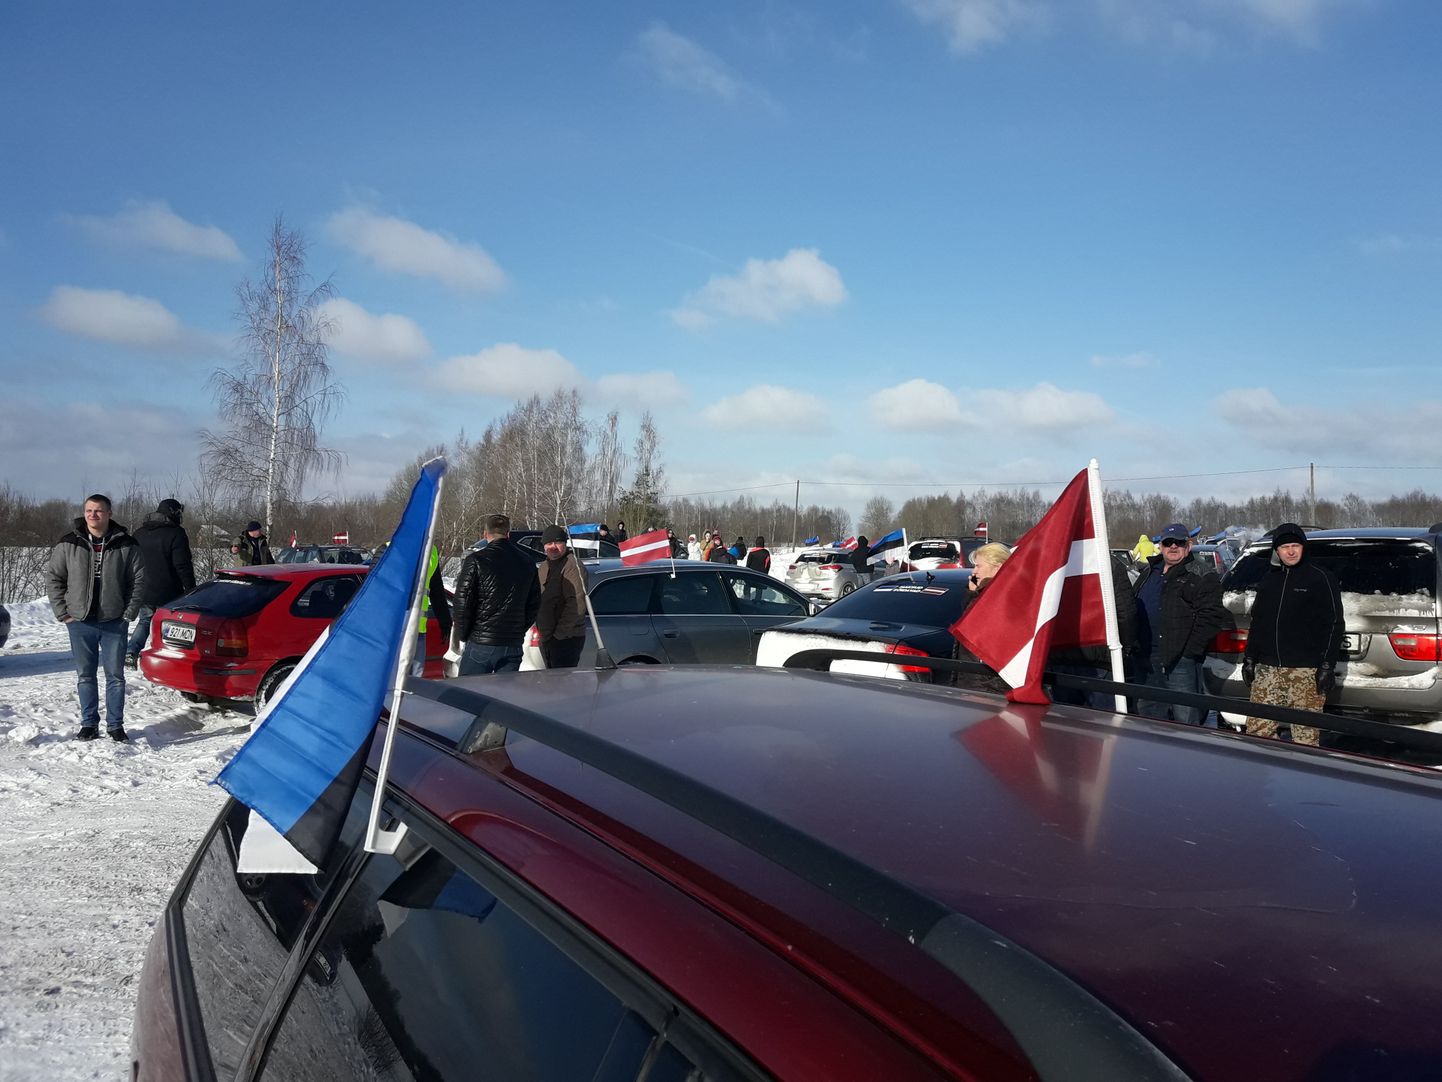 Sajad eestlased sõitsid veebruaris Eesti aktsiispoliitika vastu protesteerimiseks Lätti.